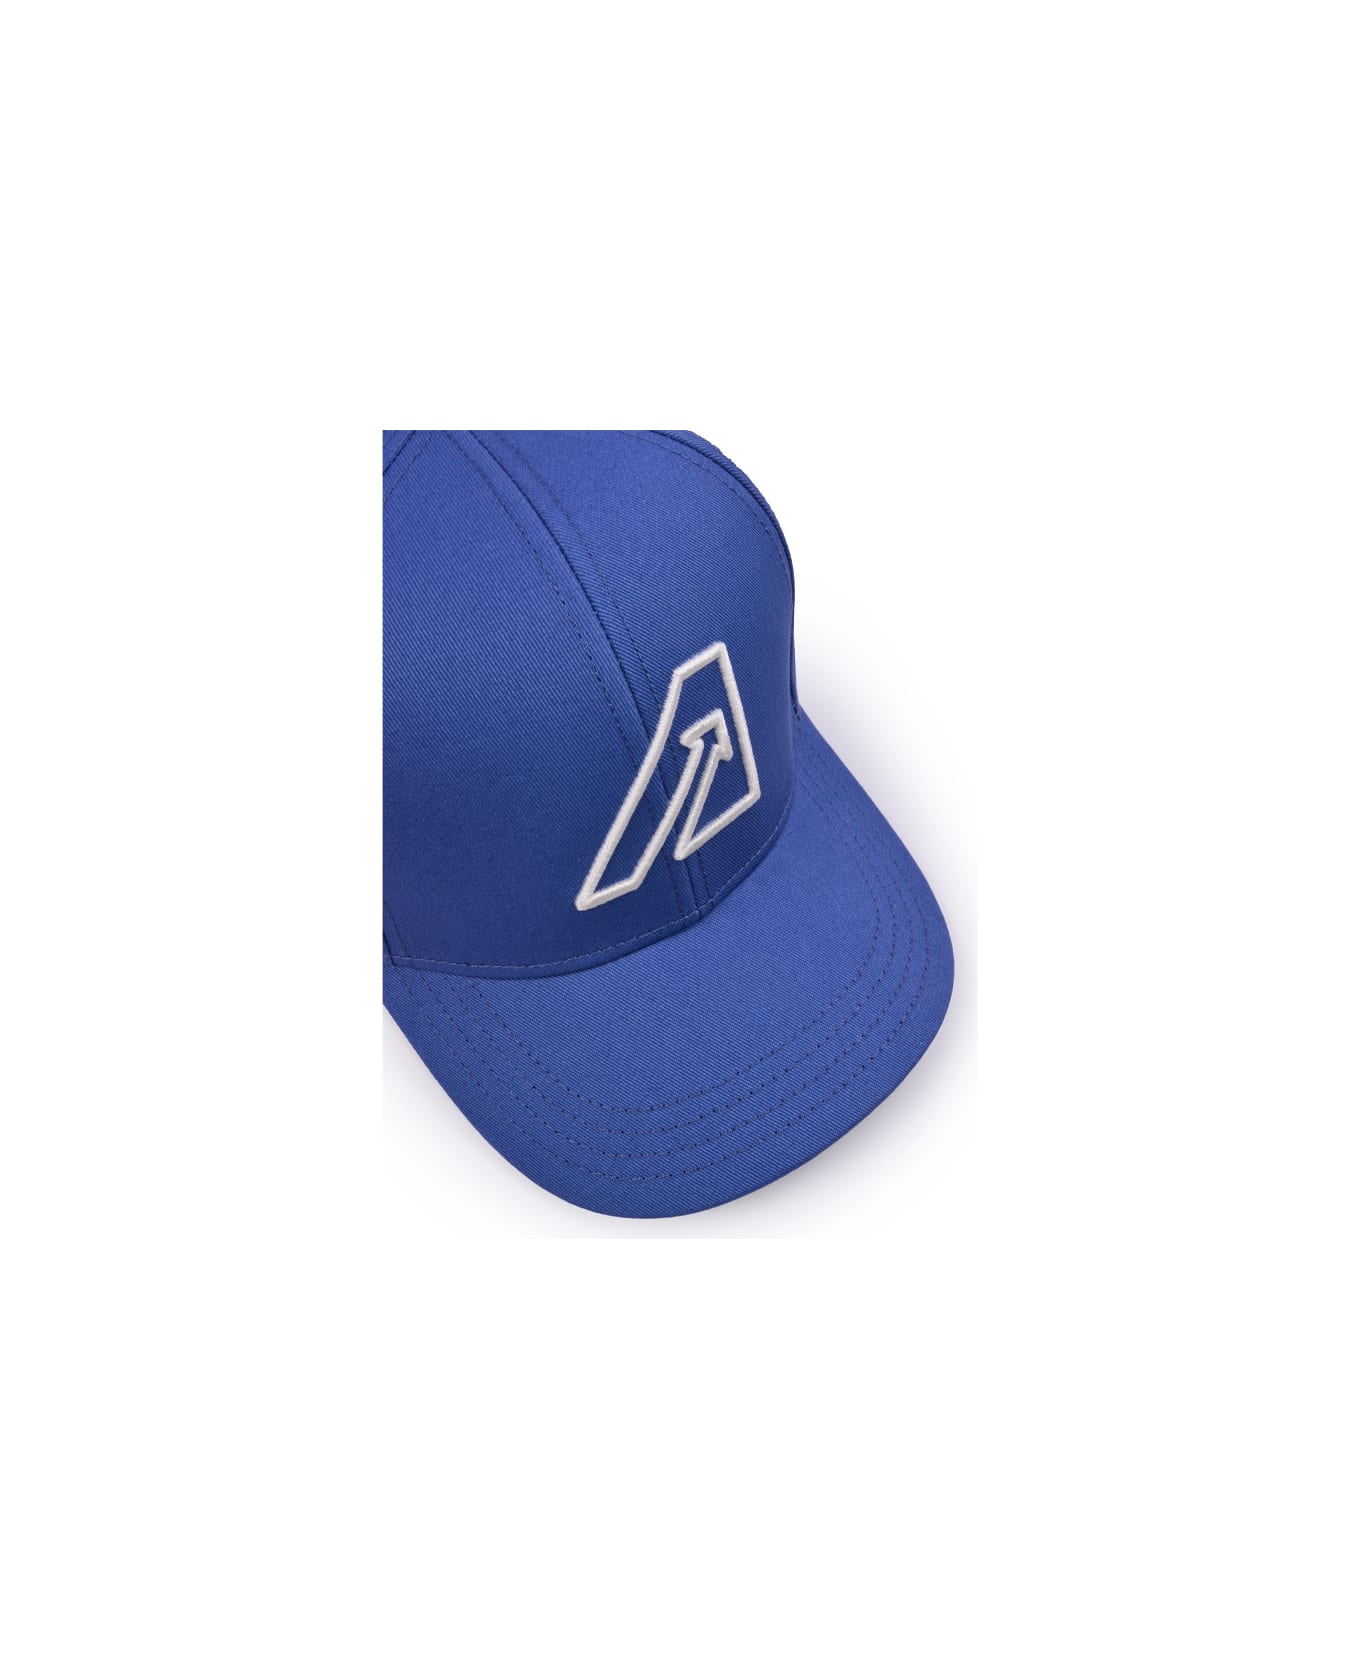 Autry Hats - Light blue